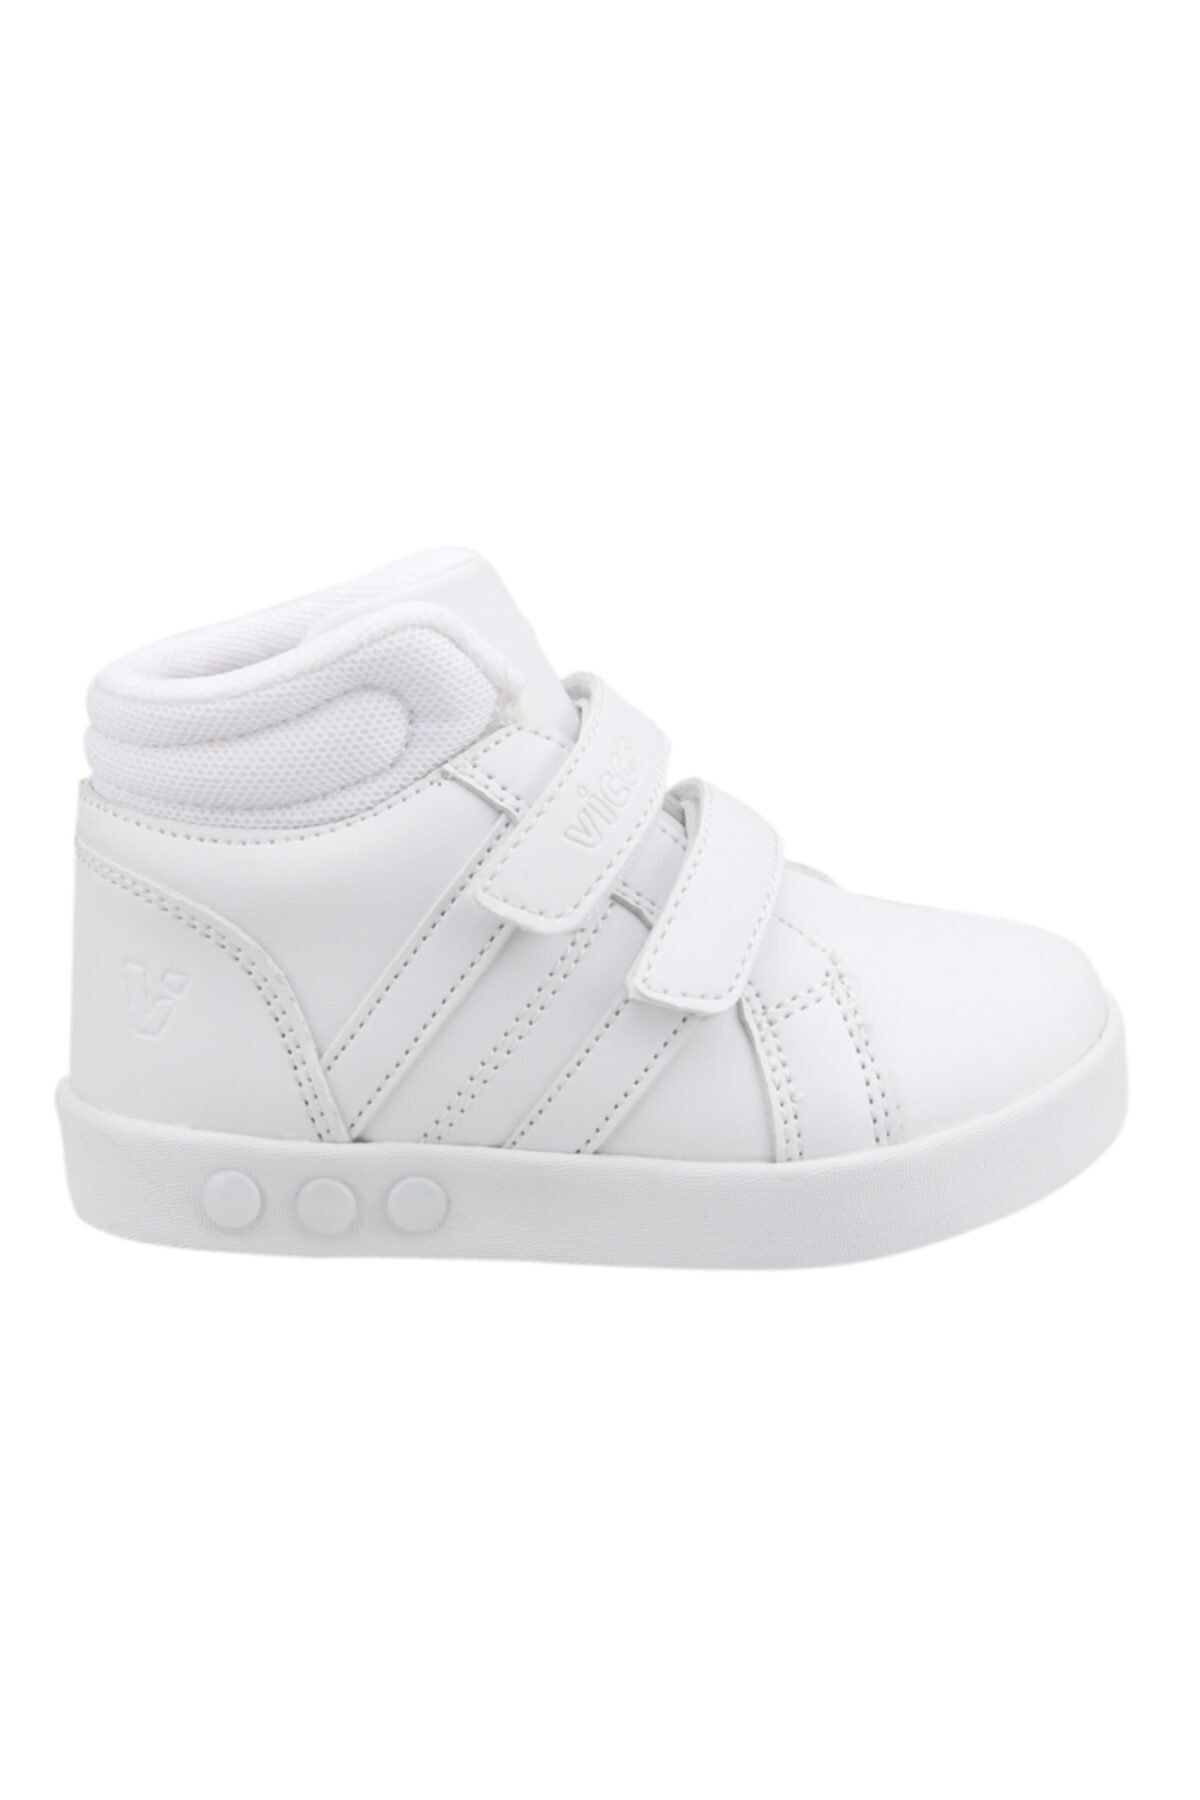 Vicco Unisex Bebek Beyaz 313.b19k.104 Lucky Işıklı  Spor Ayakkabı Sneaker